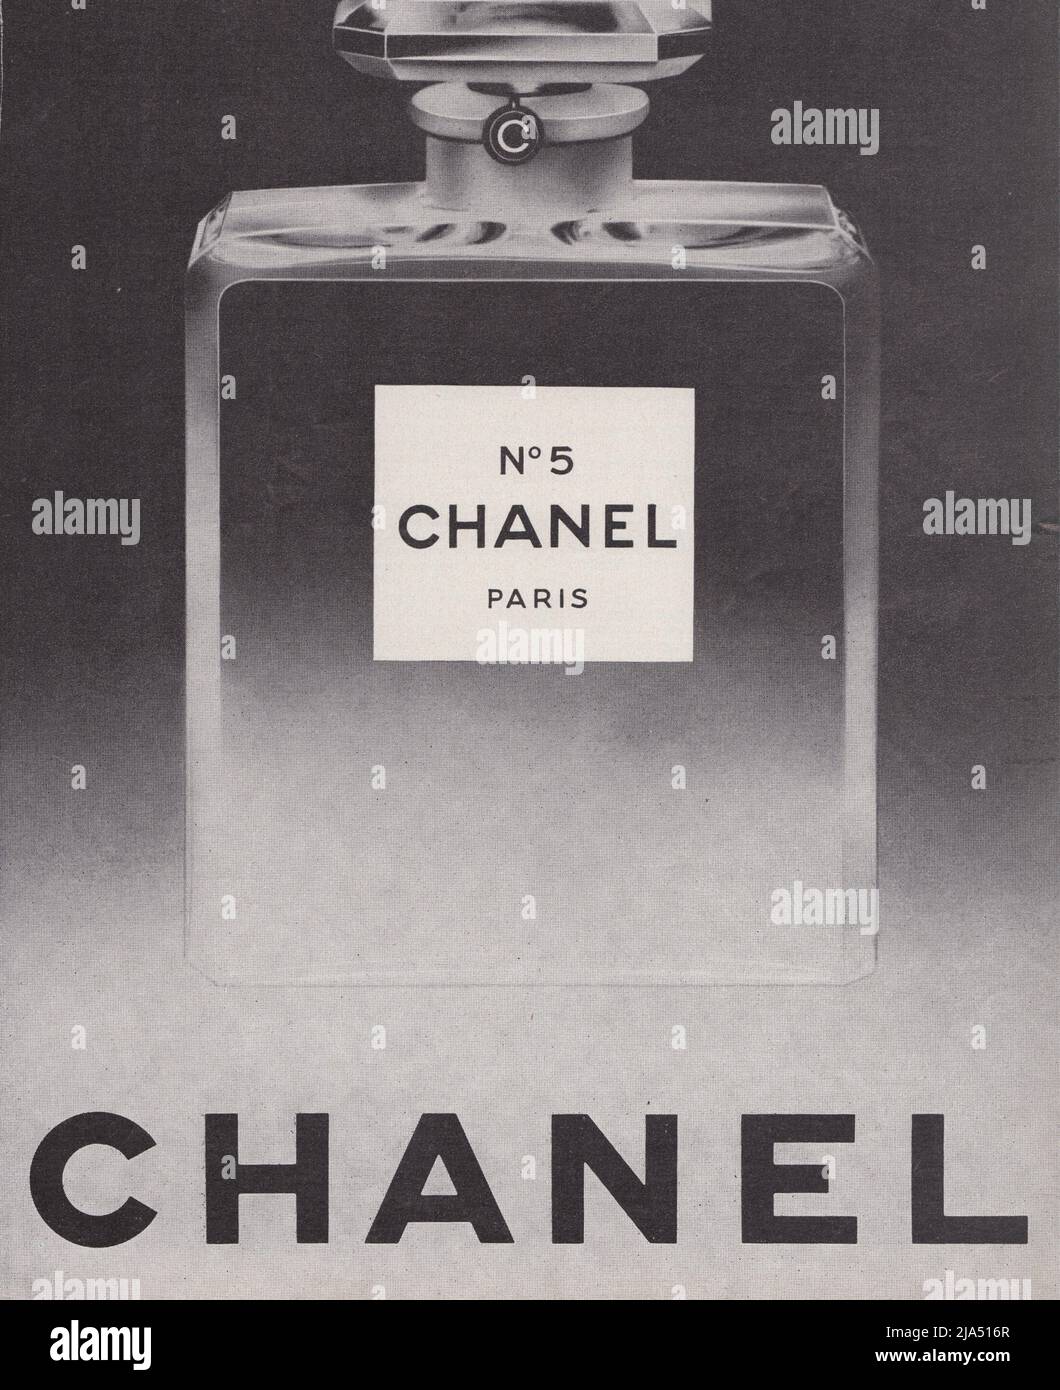 Chanel No 5 perfume bottle Chanel Paris vintage paper advertisement advert 1960s 1970s Stock Photo